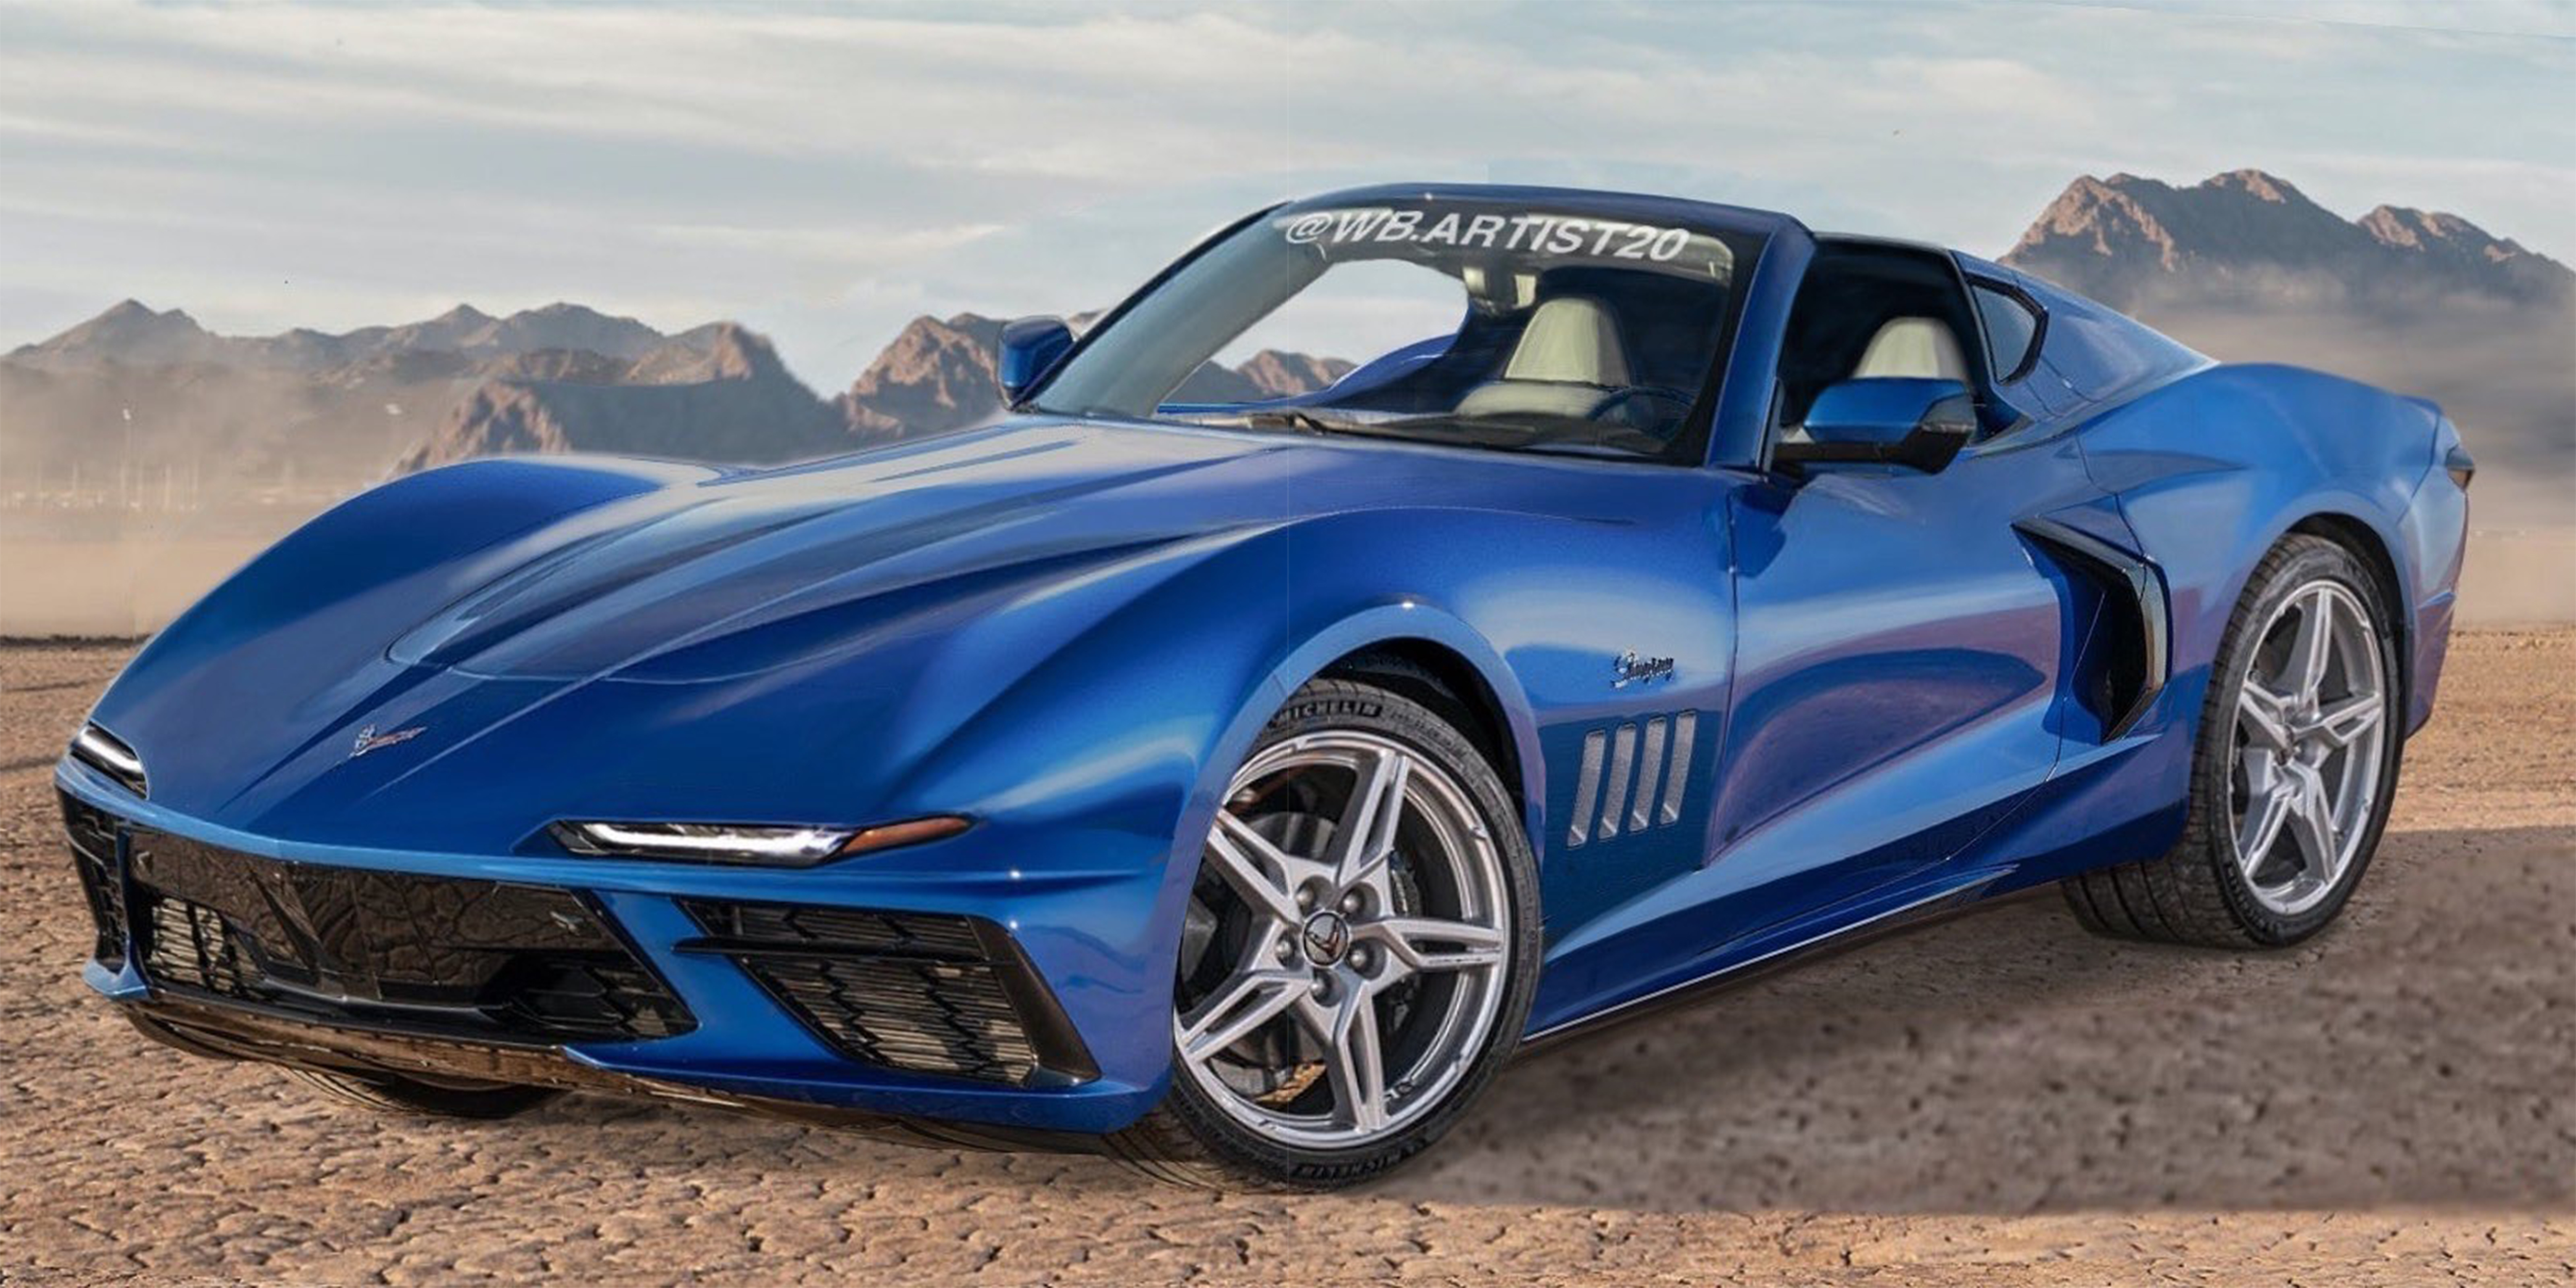 Corvette rendering, 2020 corvette, rendering, C3 Corvette, Chevrolet Corvet...